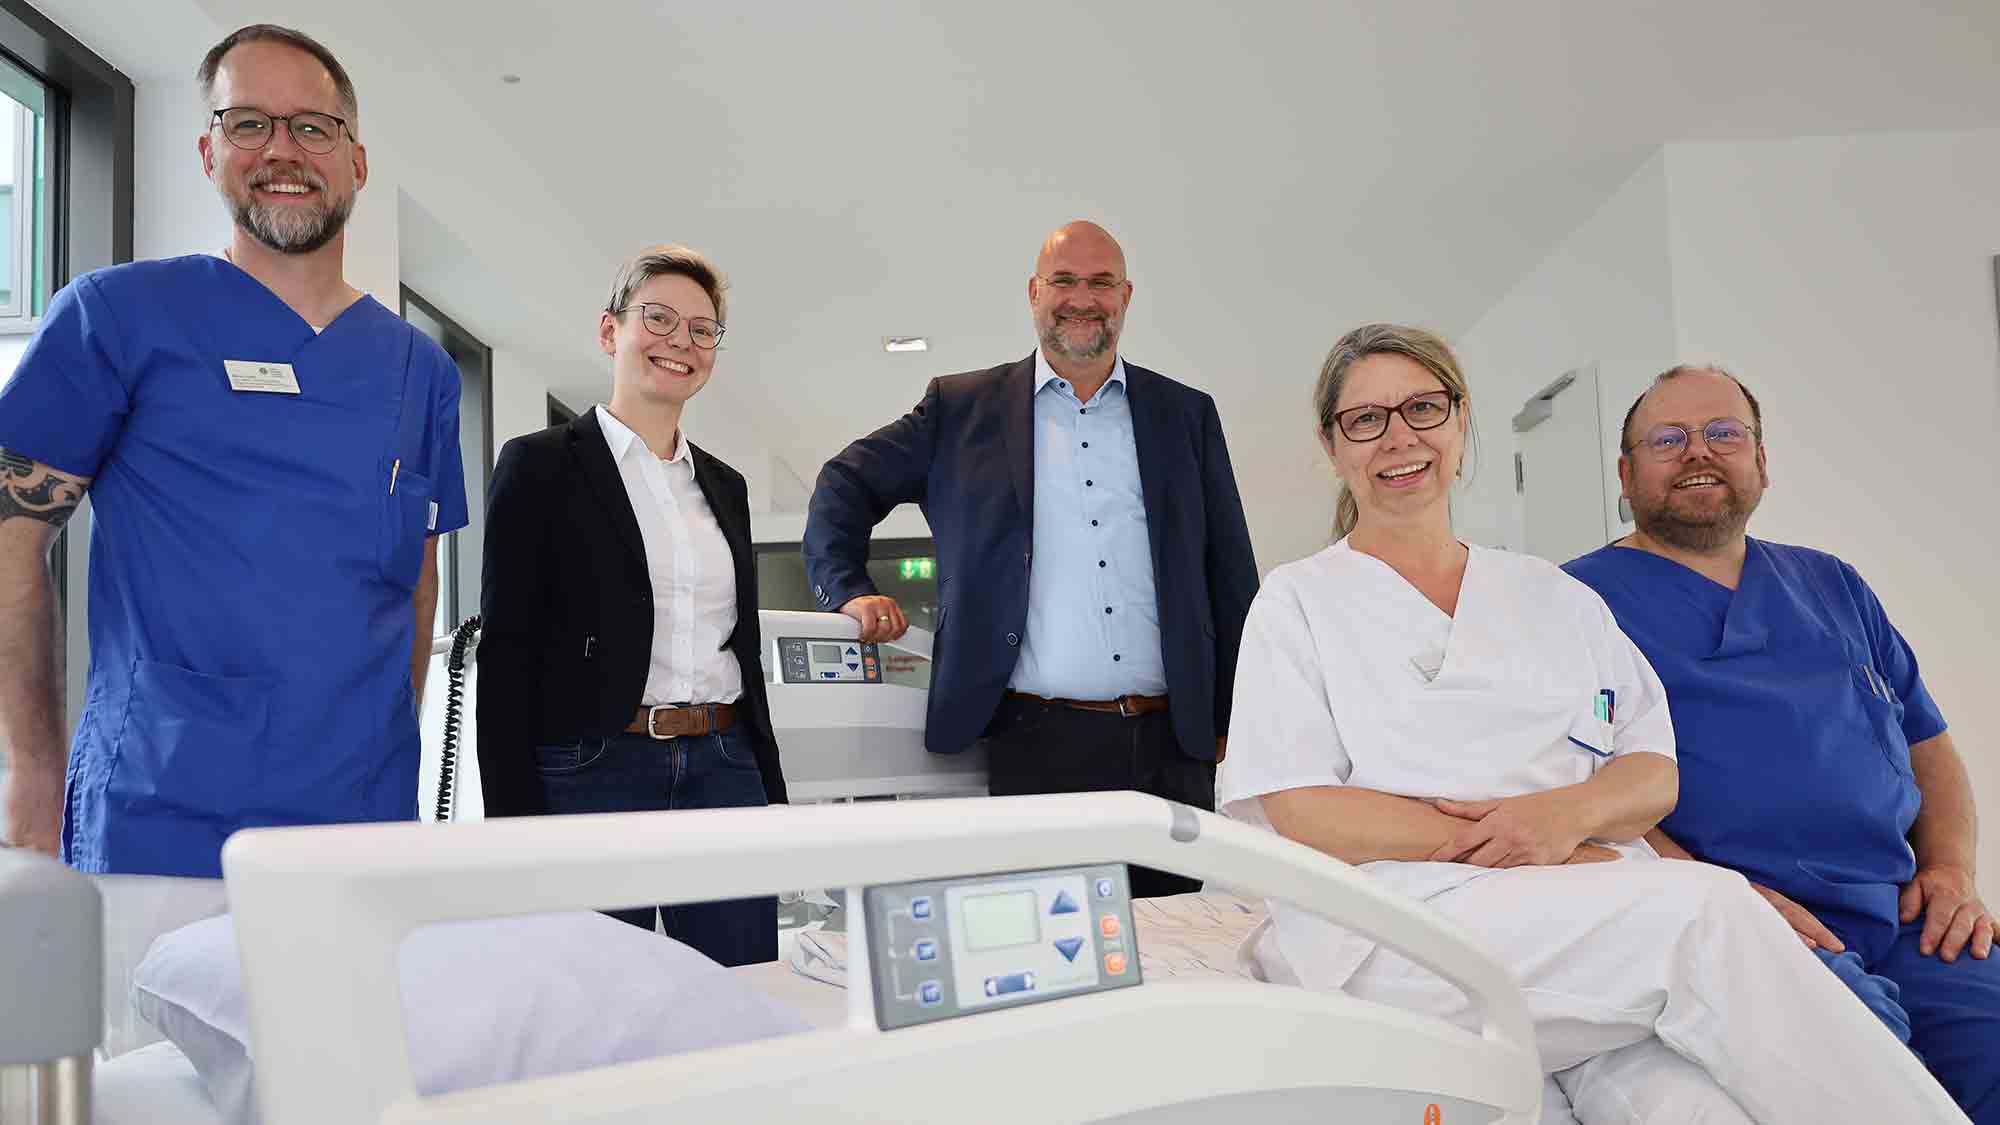 Sankt Elisabeth Hospital Gütersloh: Neue Betten für mehr Komfort, Robert und Christa Linnemann Stiftung spendet 45.000 Euro 